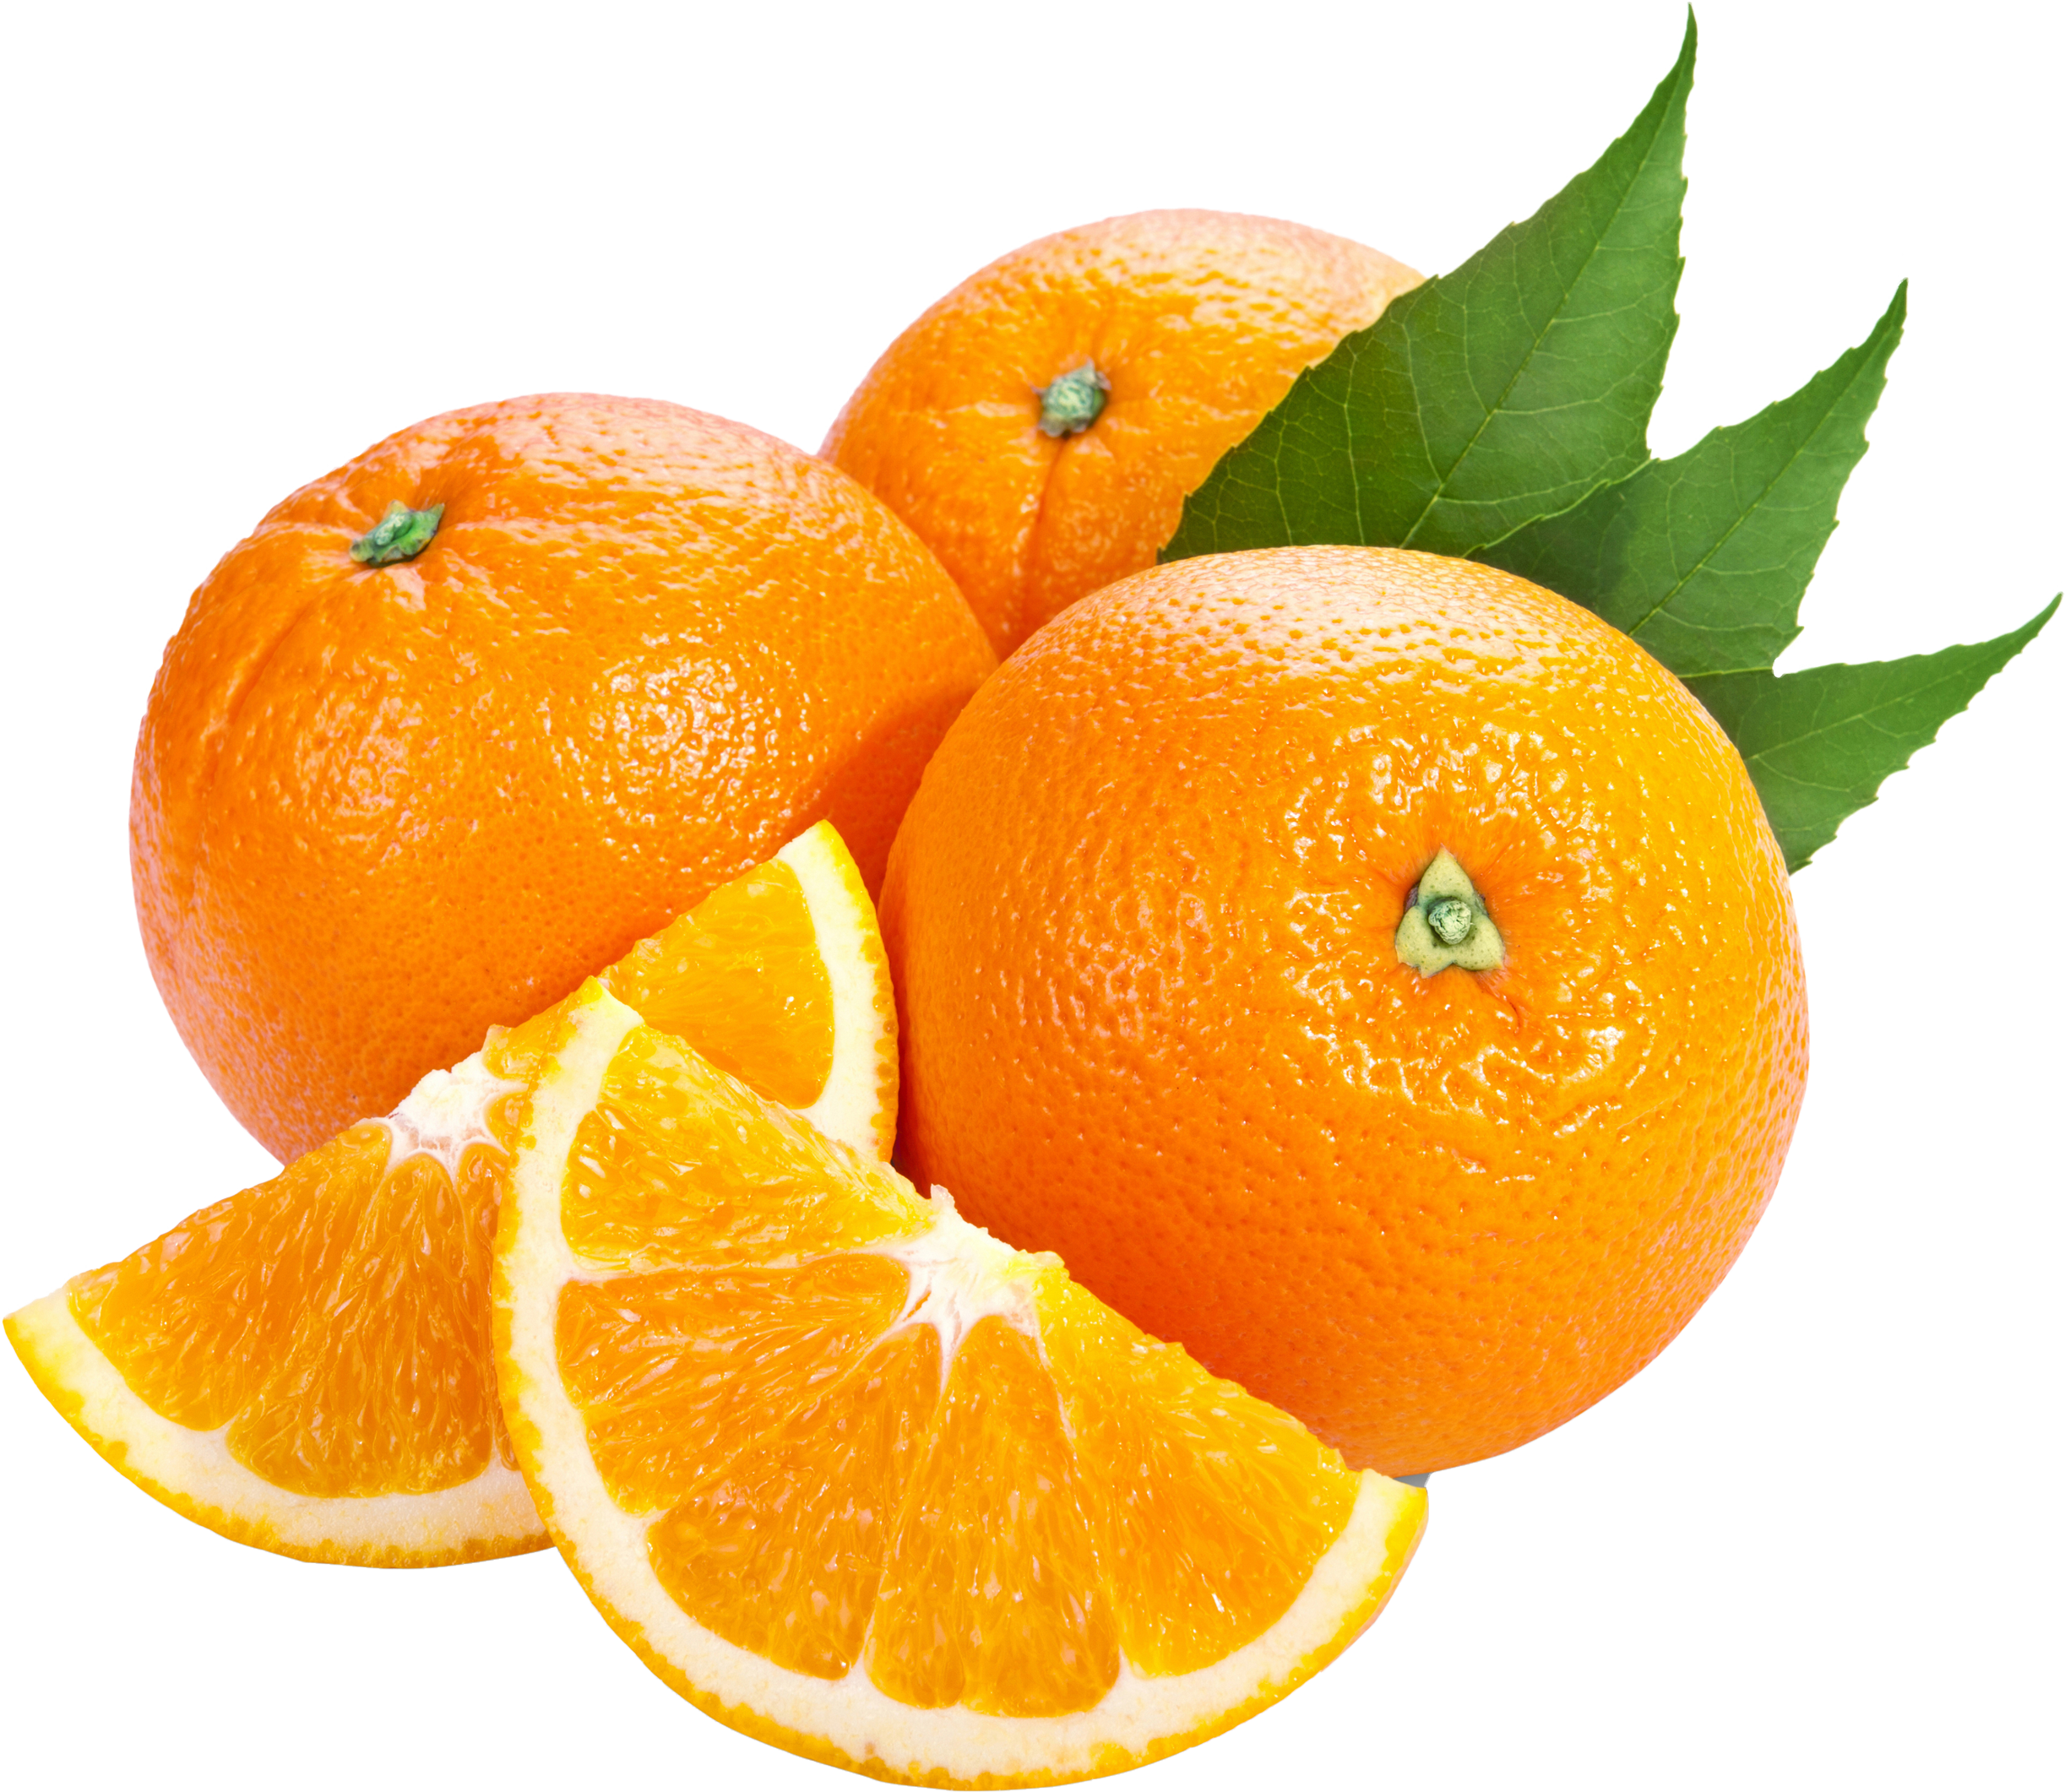 Orange Png Image, Free Download - Orange, Transparent background PNG HD thumbnail